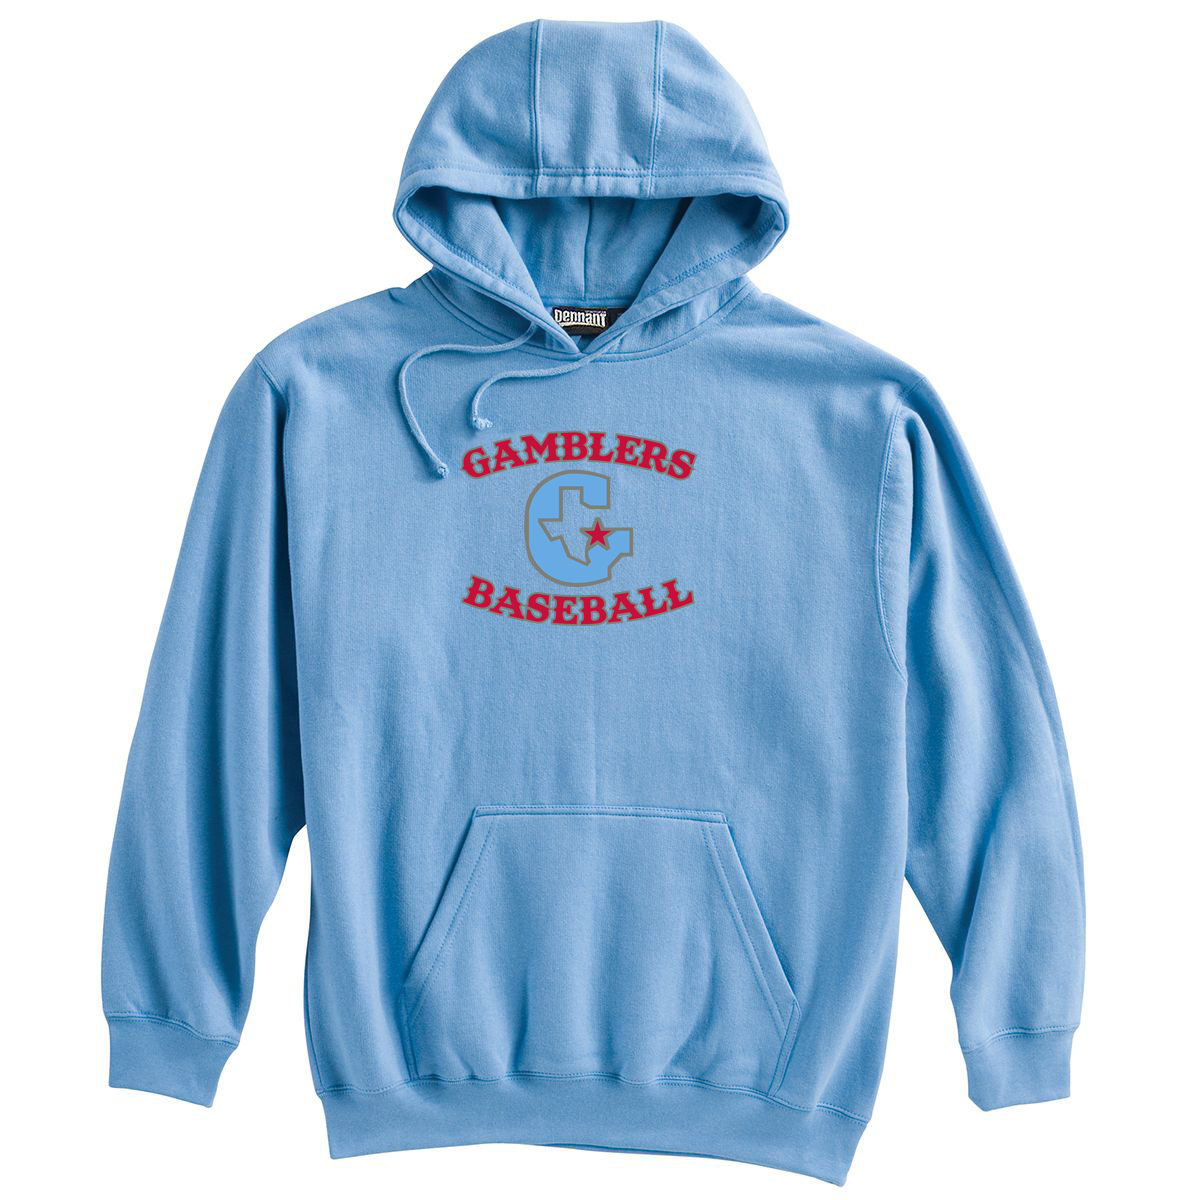 Gamblers Baseball Sweatshirt